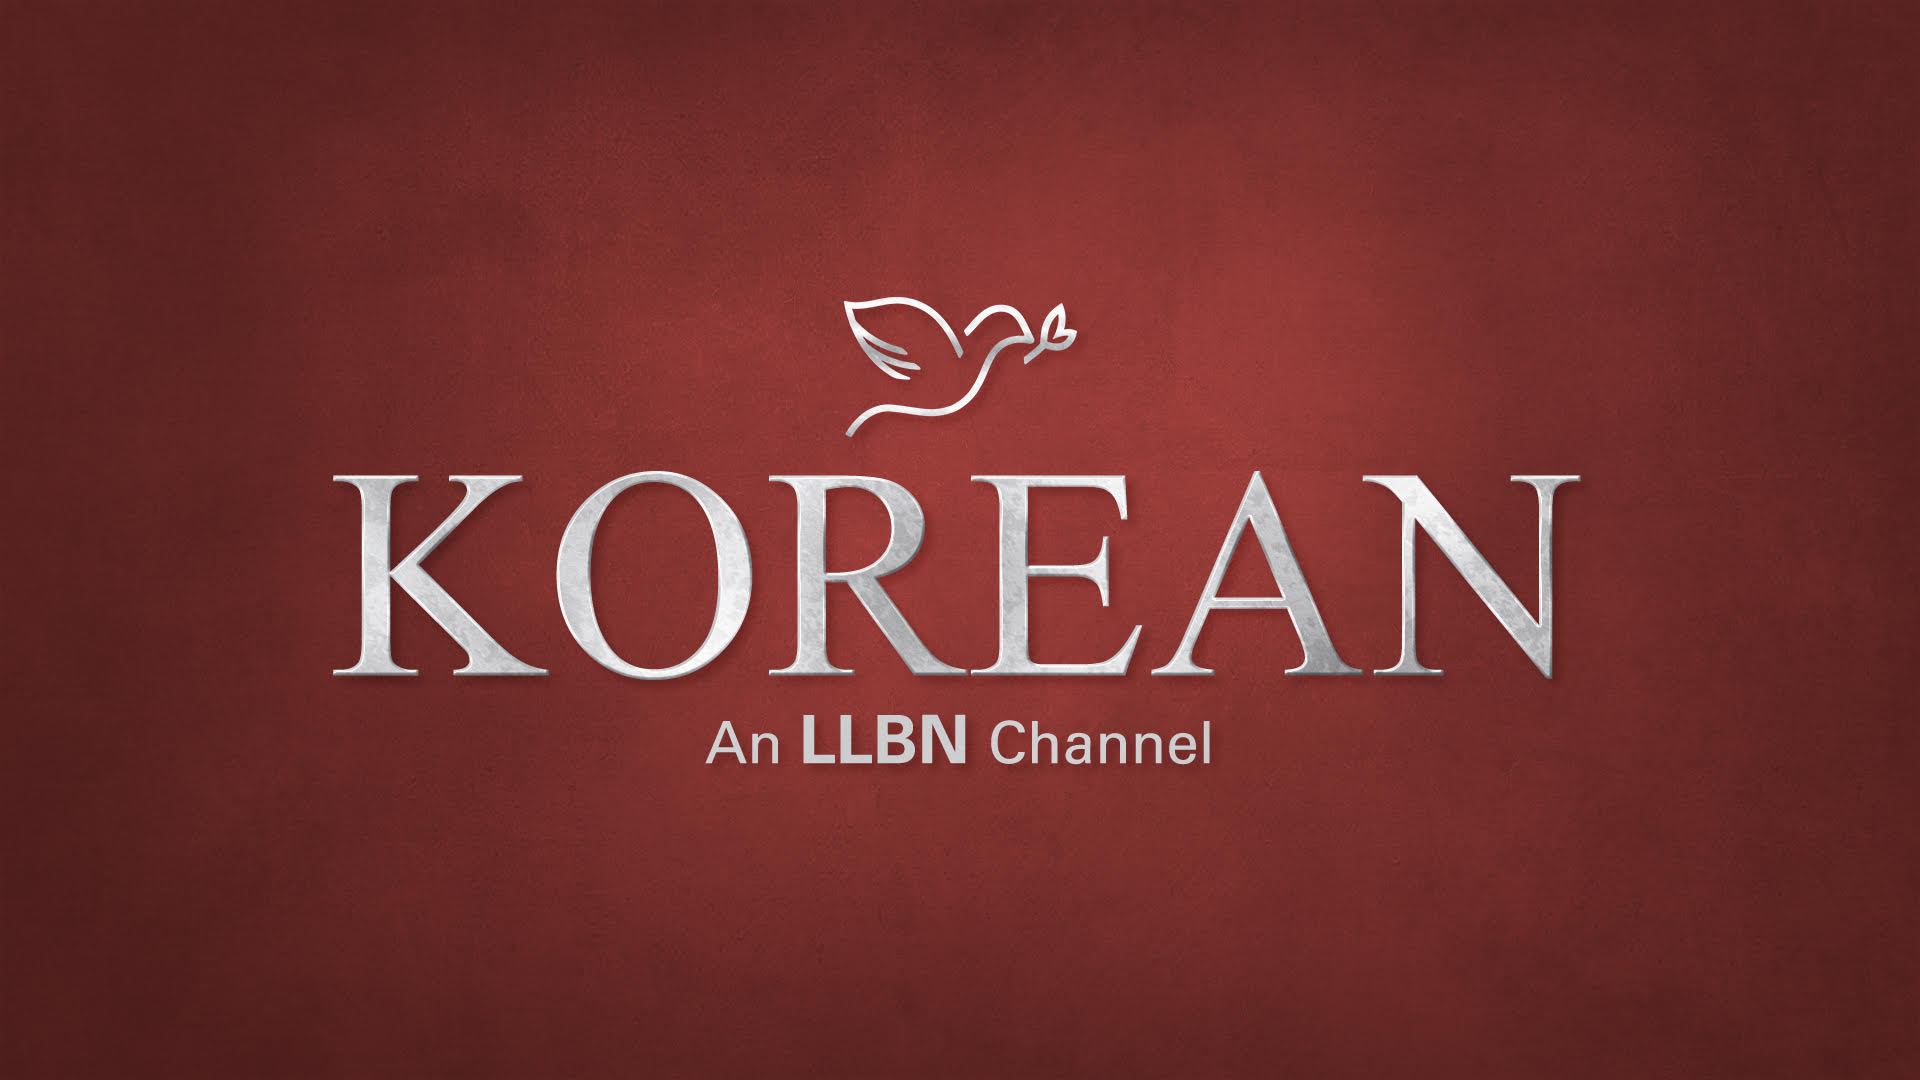 LLBN Korean Christian TV